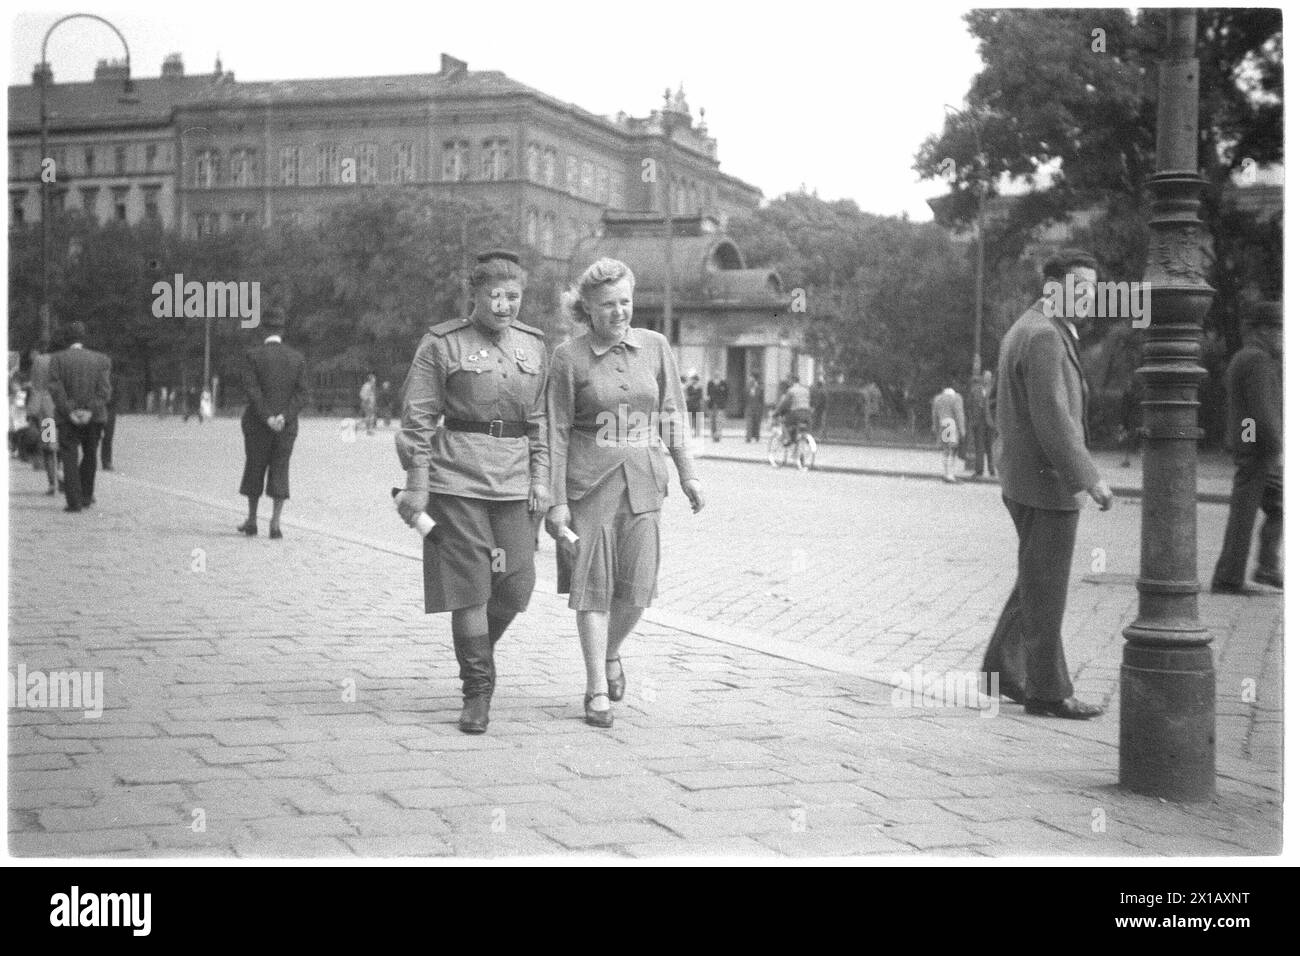 Zwei sowjetische Soldaten auf dem Karlsplatz, im Hintergrund Stadtbahnhof Karlsplatz und Gewerbeschule, 01.06.1946 - 19460601 PD0027 - Rechteinfo: Rights Managed (RM) Stockfoto